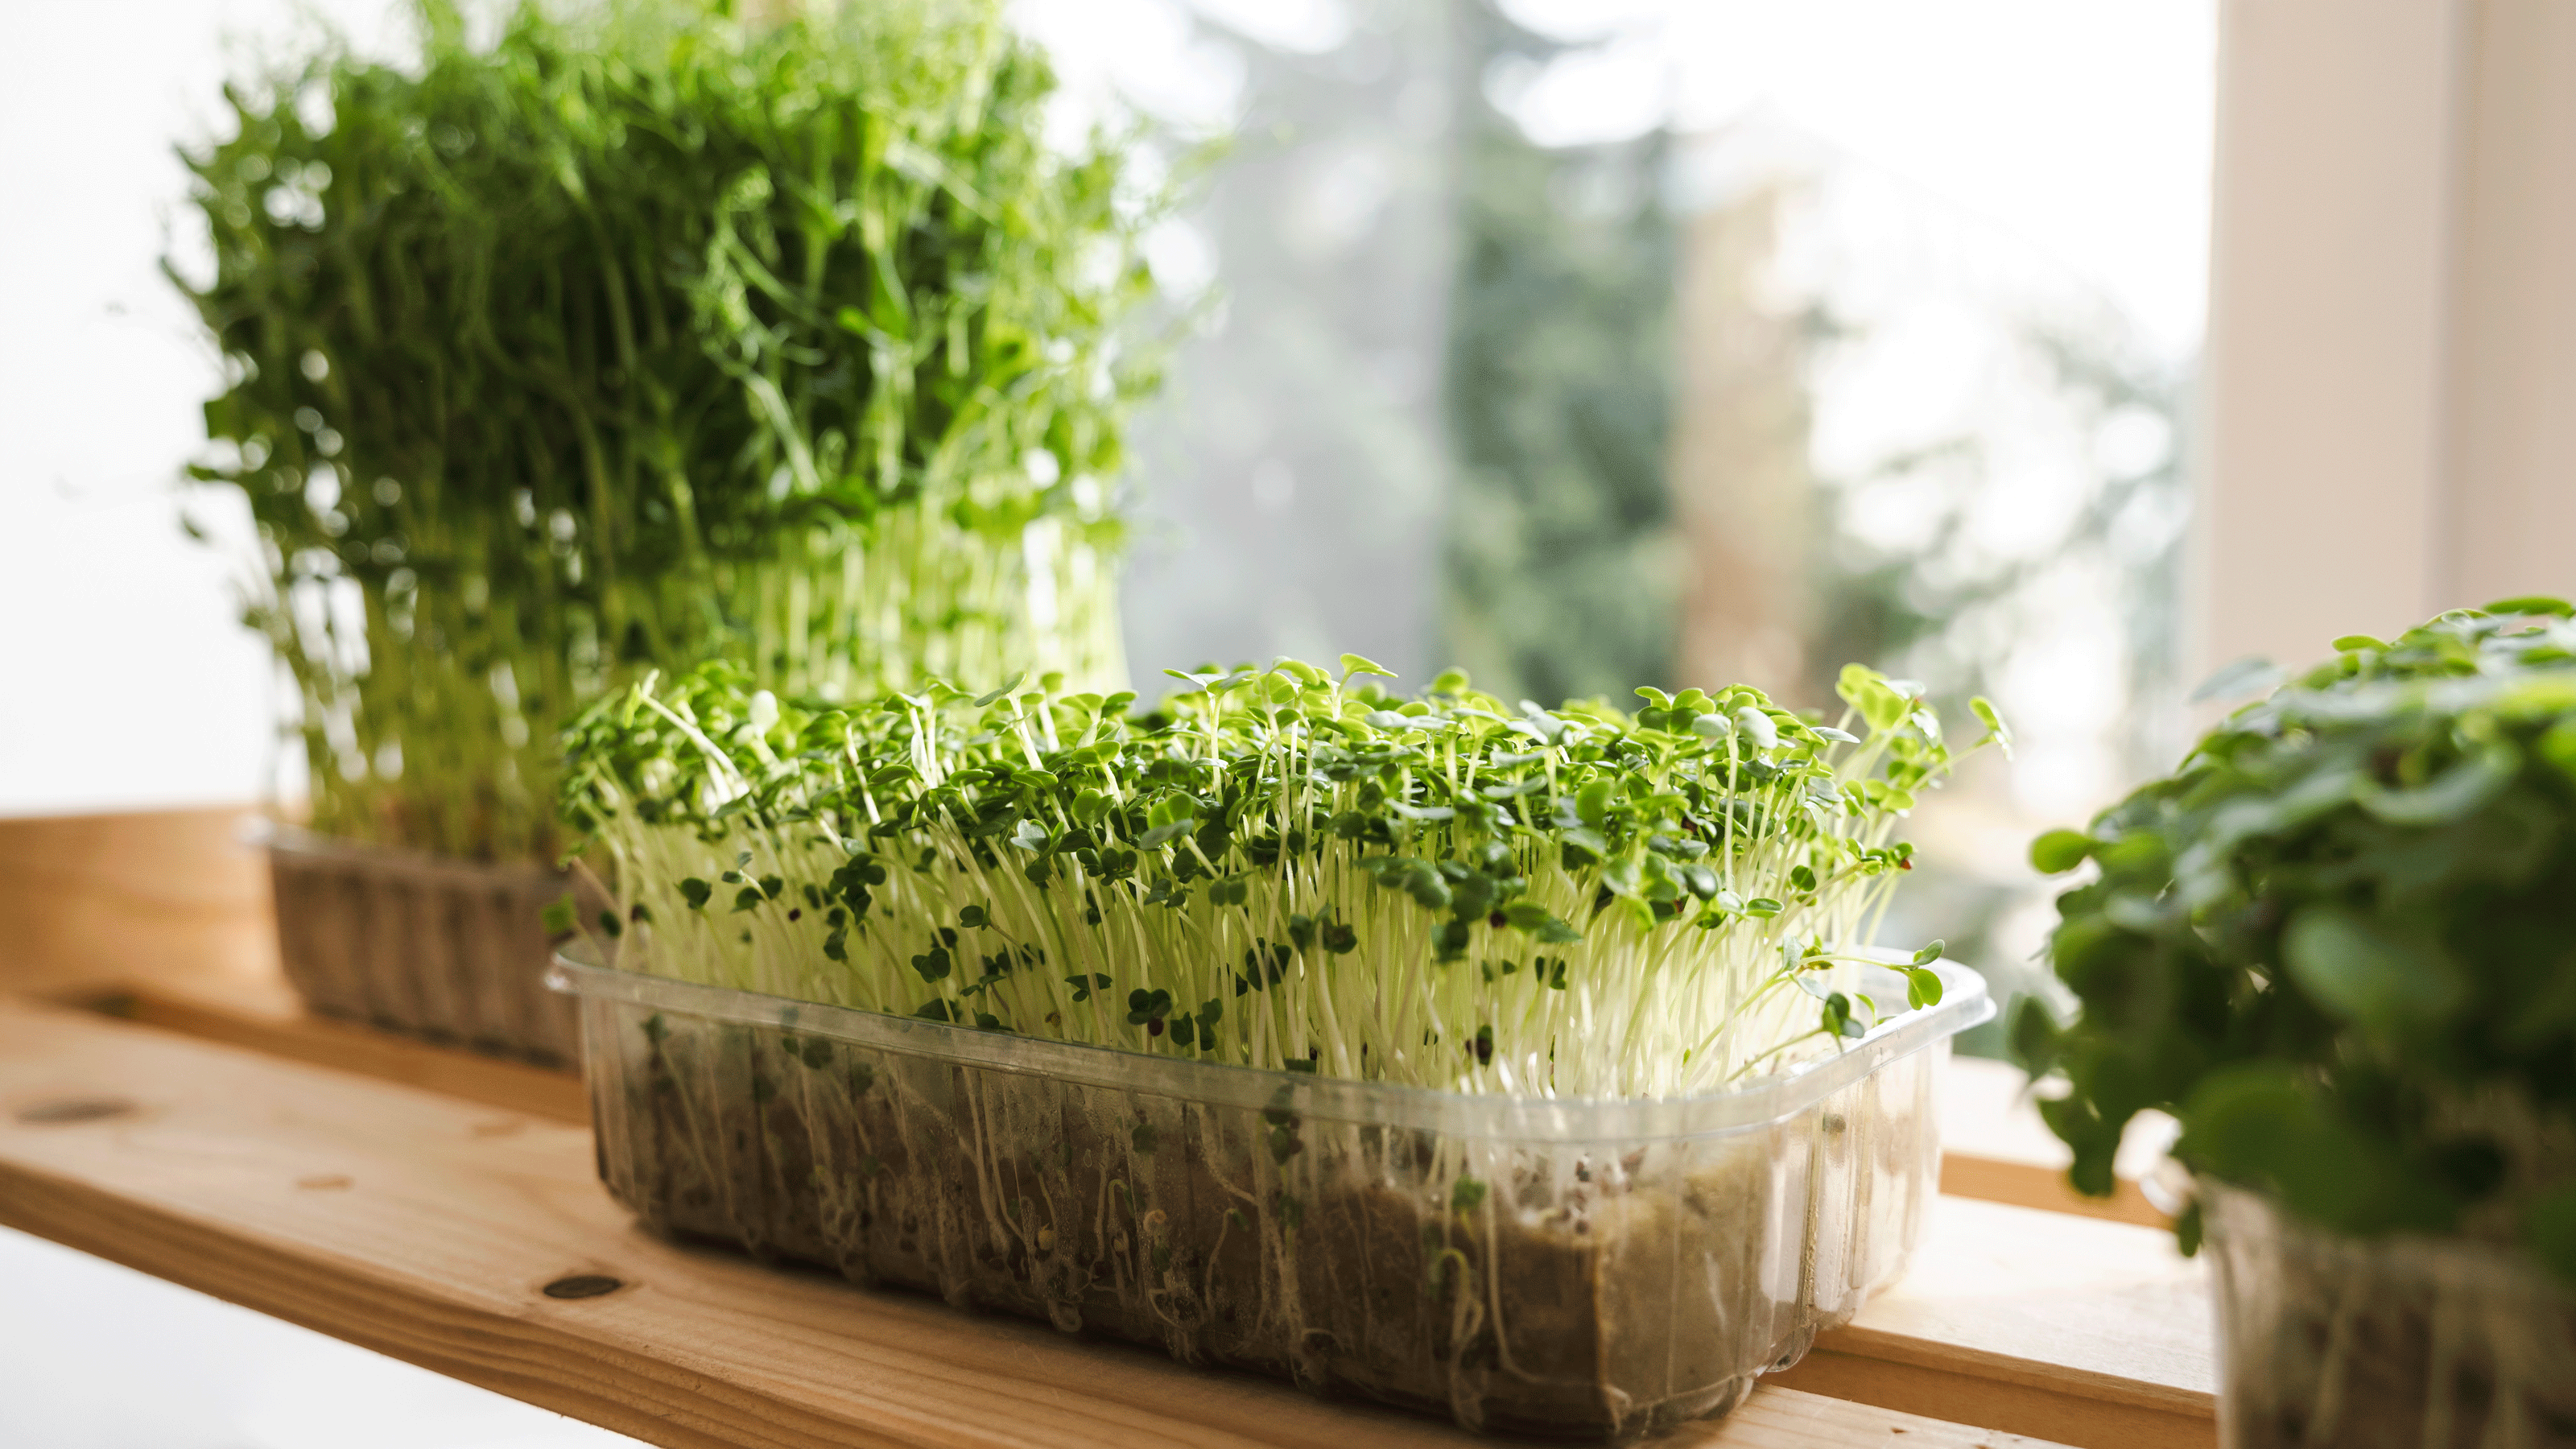 Pea microgreens growing in cardboard